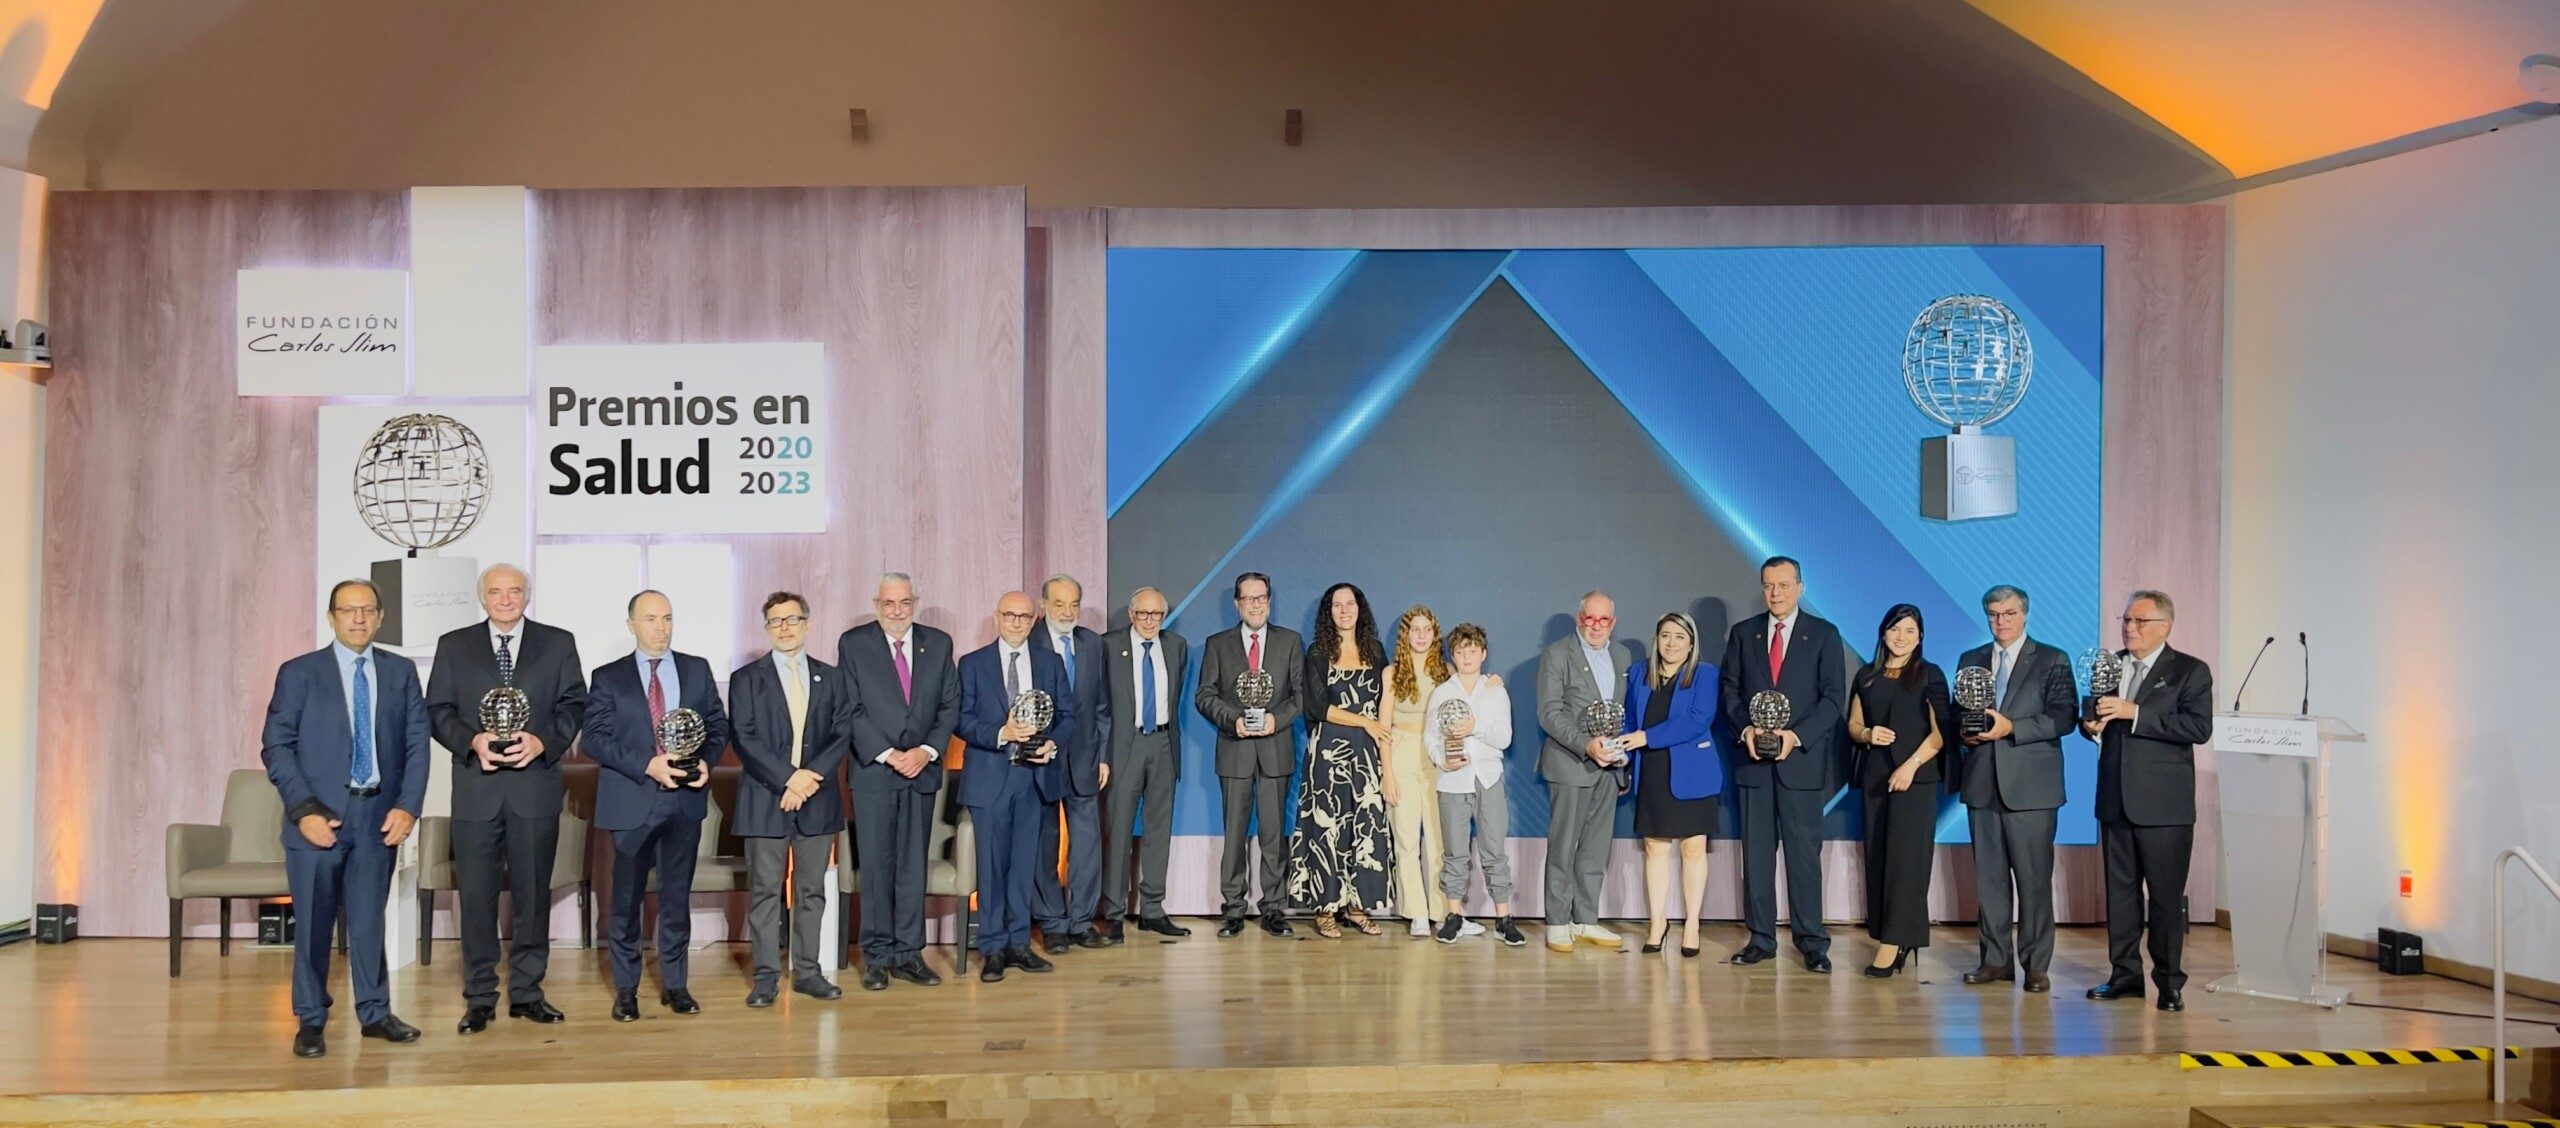 Fundación Carlos Slim Entrega Premios Y Destaca Acciones Durante La Pandemia Plenilunia 9336